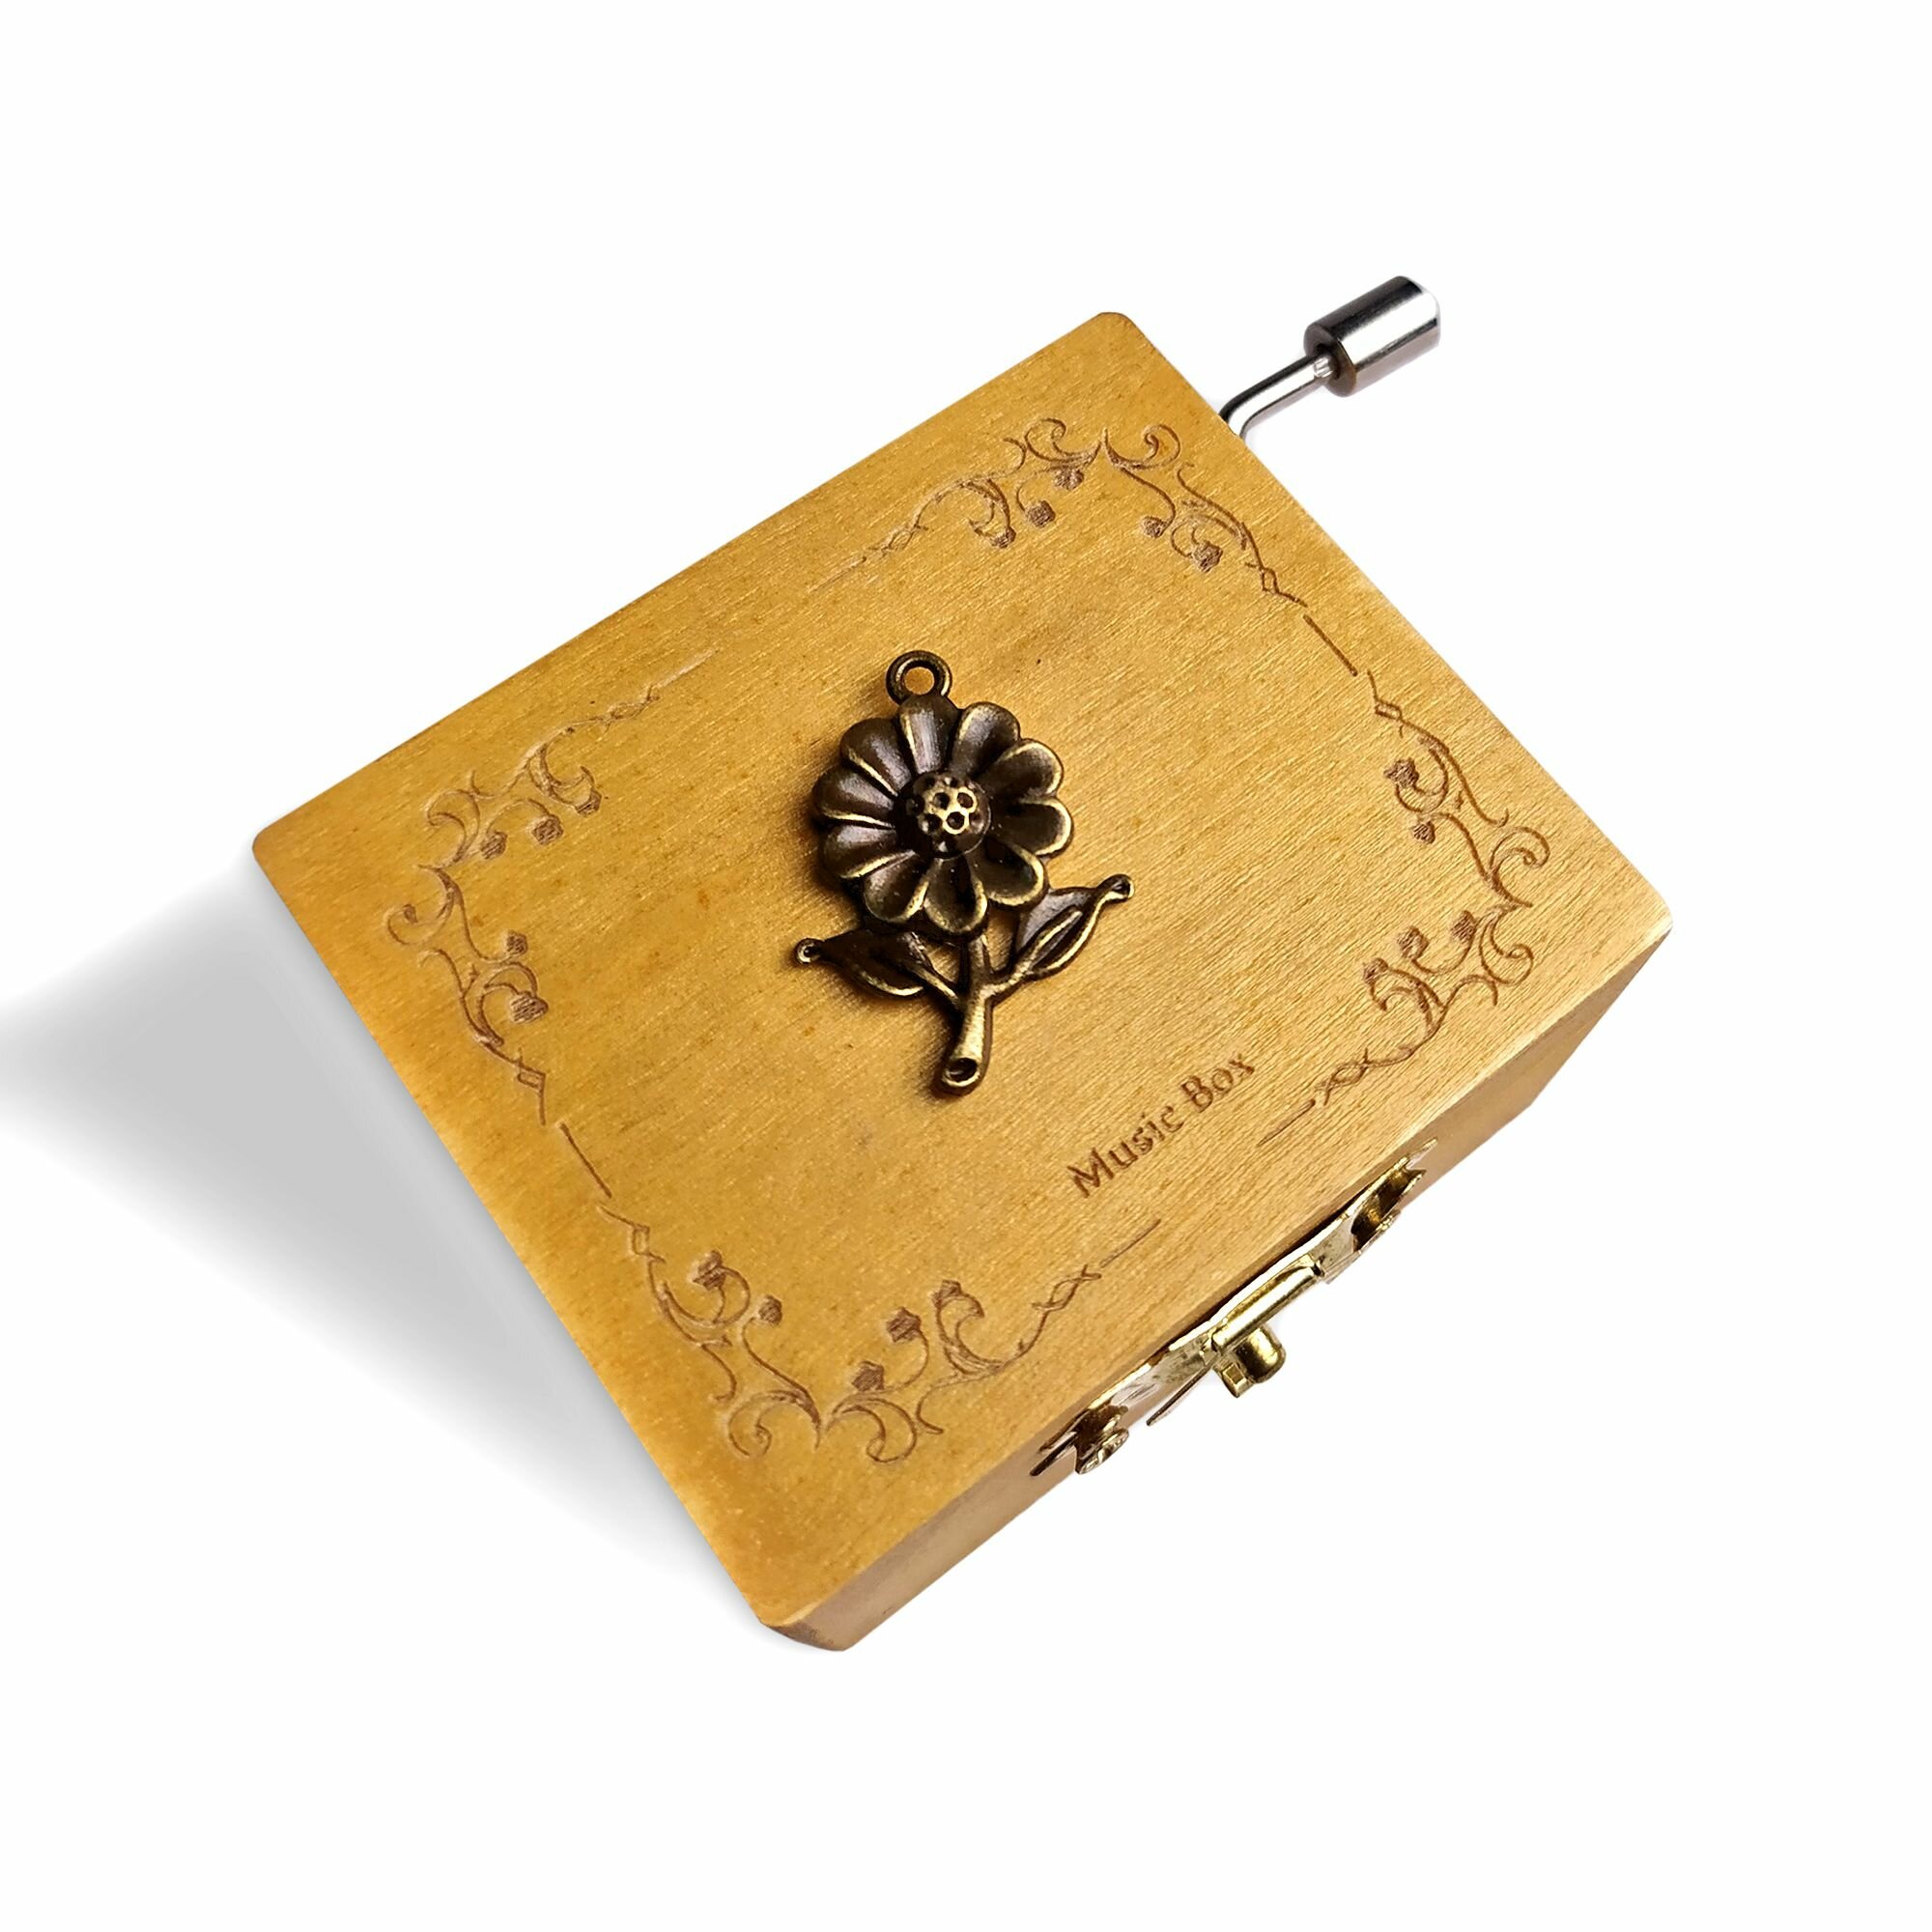 Музыкальная деревянная шкатулка-шарманка "Роза" с мелодией вальс цветов Чайковского